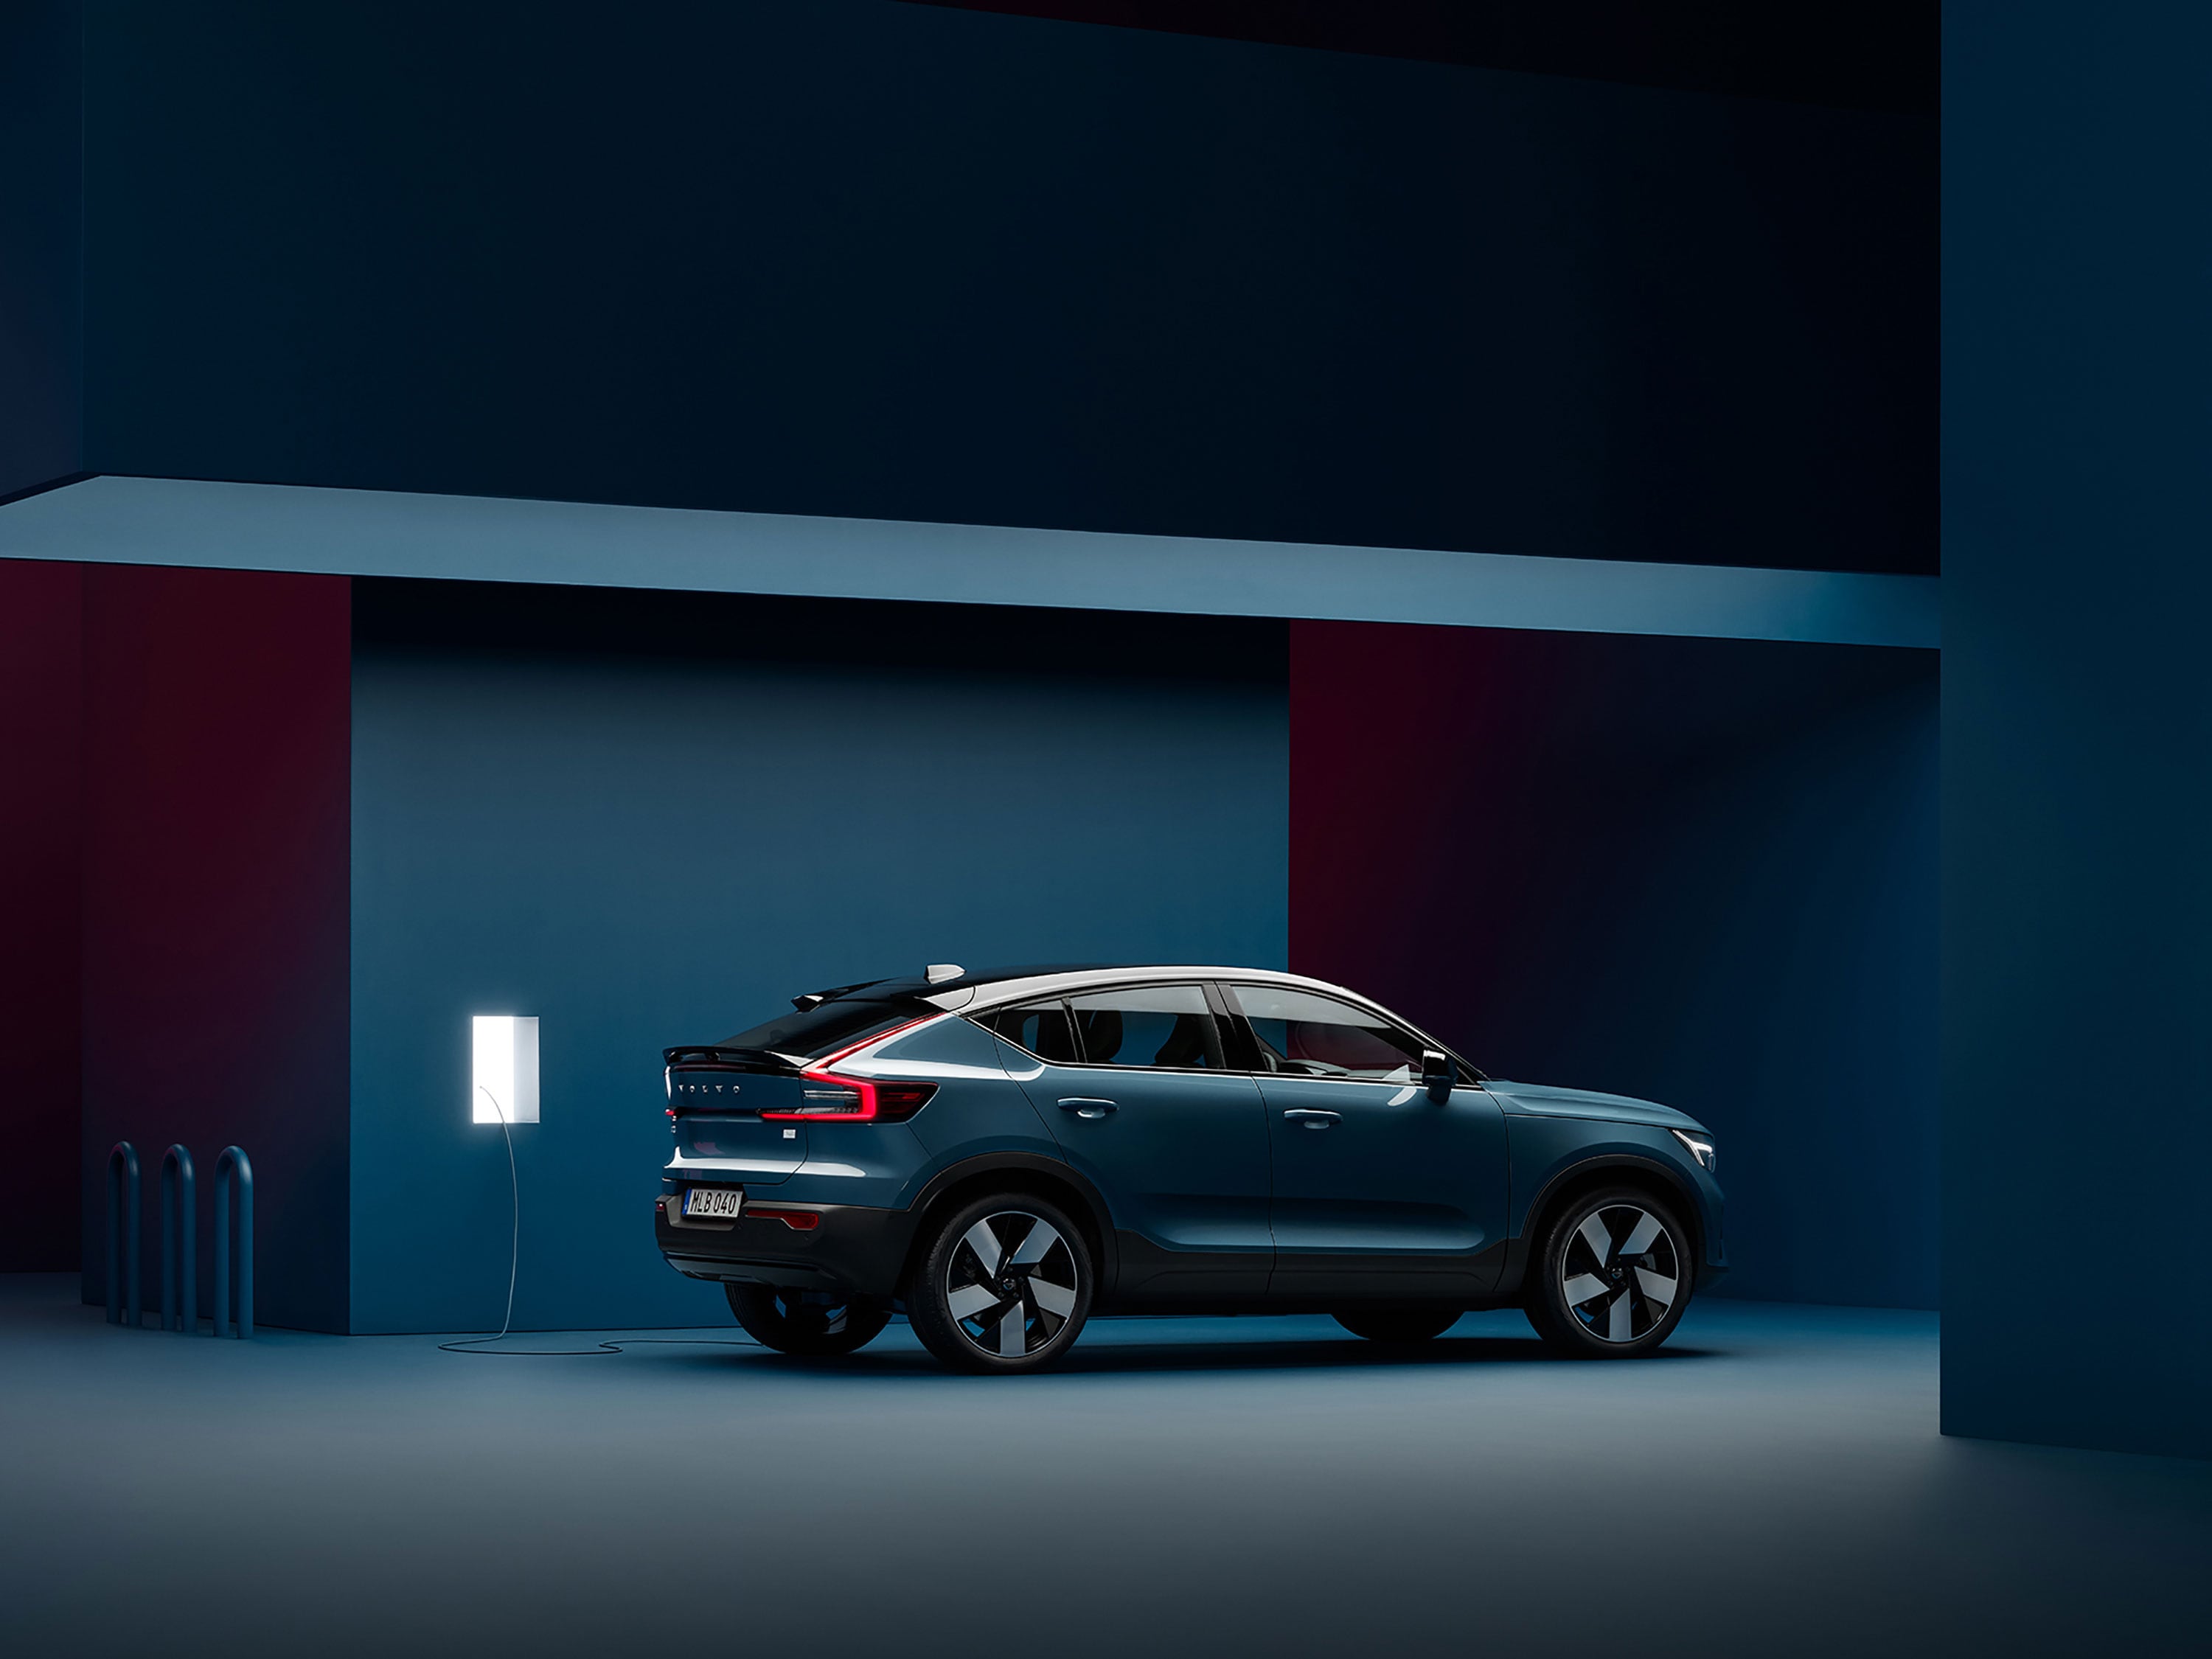 Un Volvo C40 Recharge está estacionado en un cuarto azul oscuro junto a una estación de recarga.